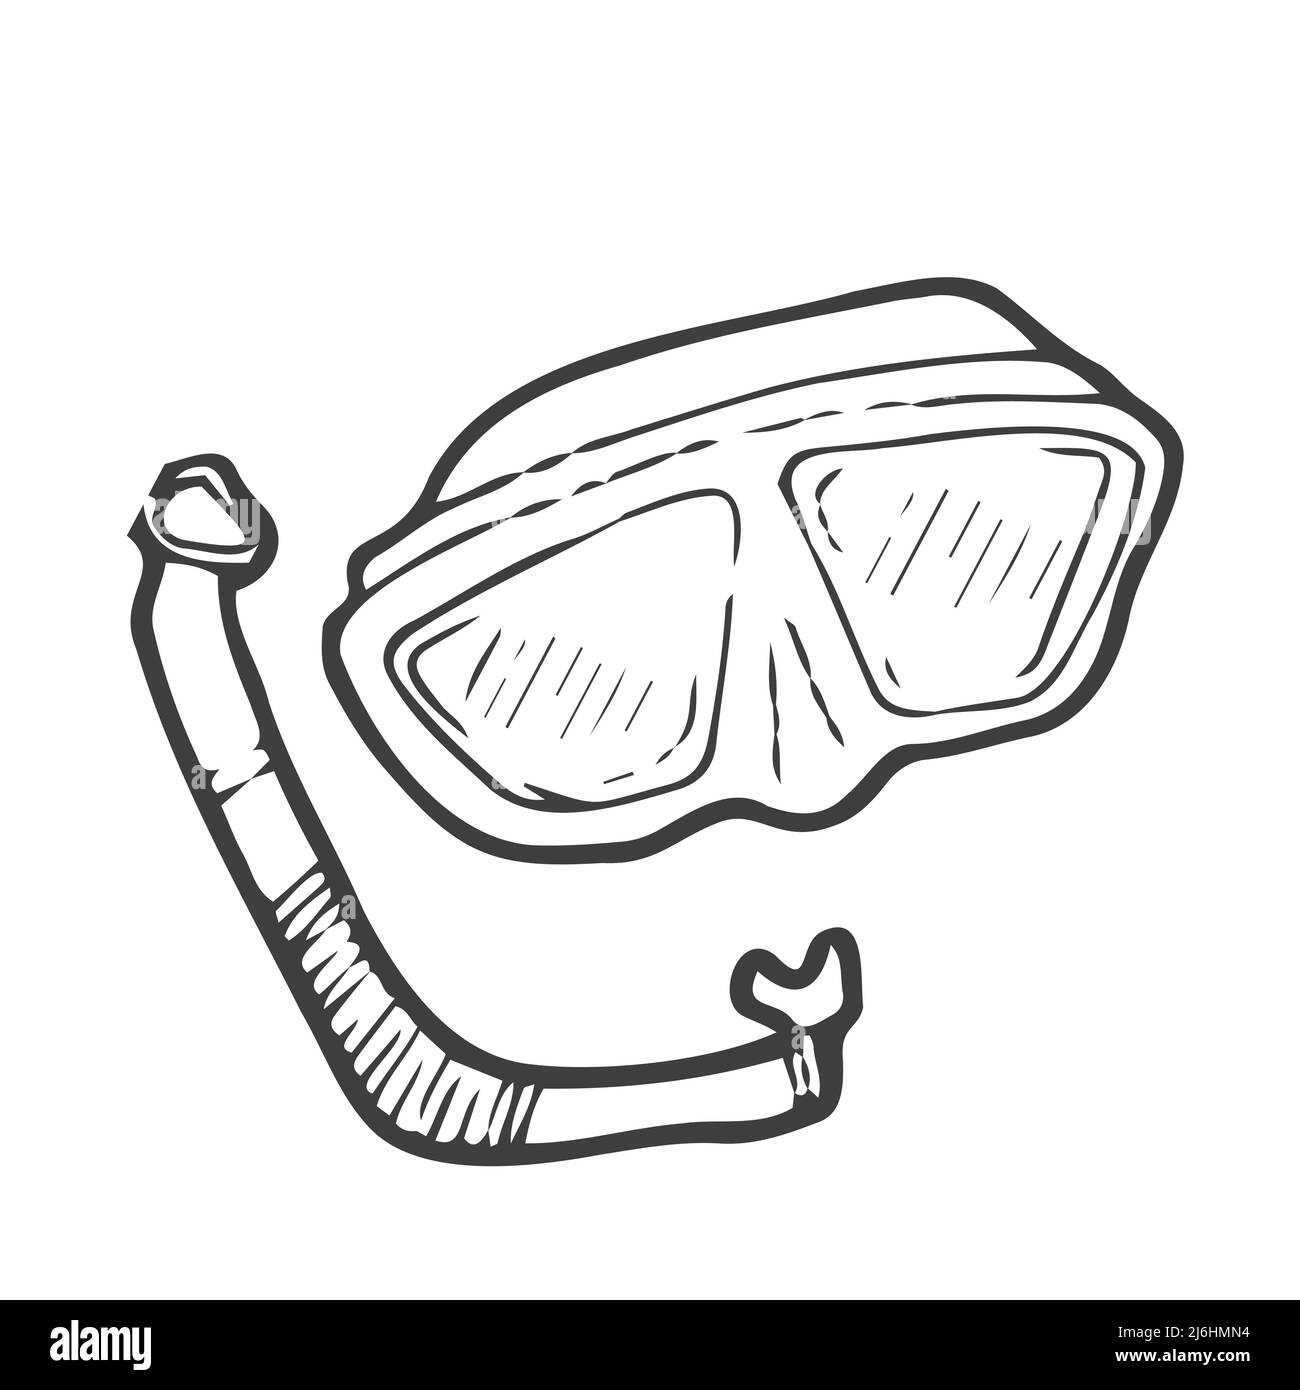 Doodle style snorkeling equipment in vector format Stock Vector